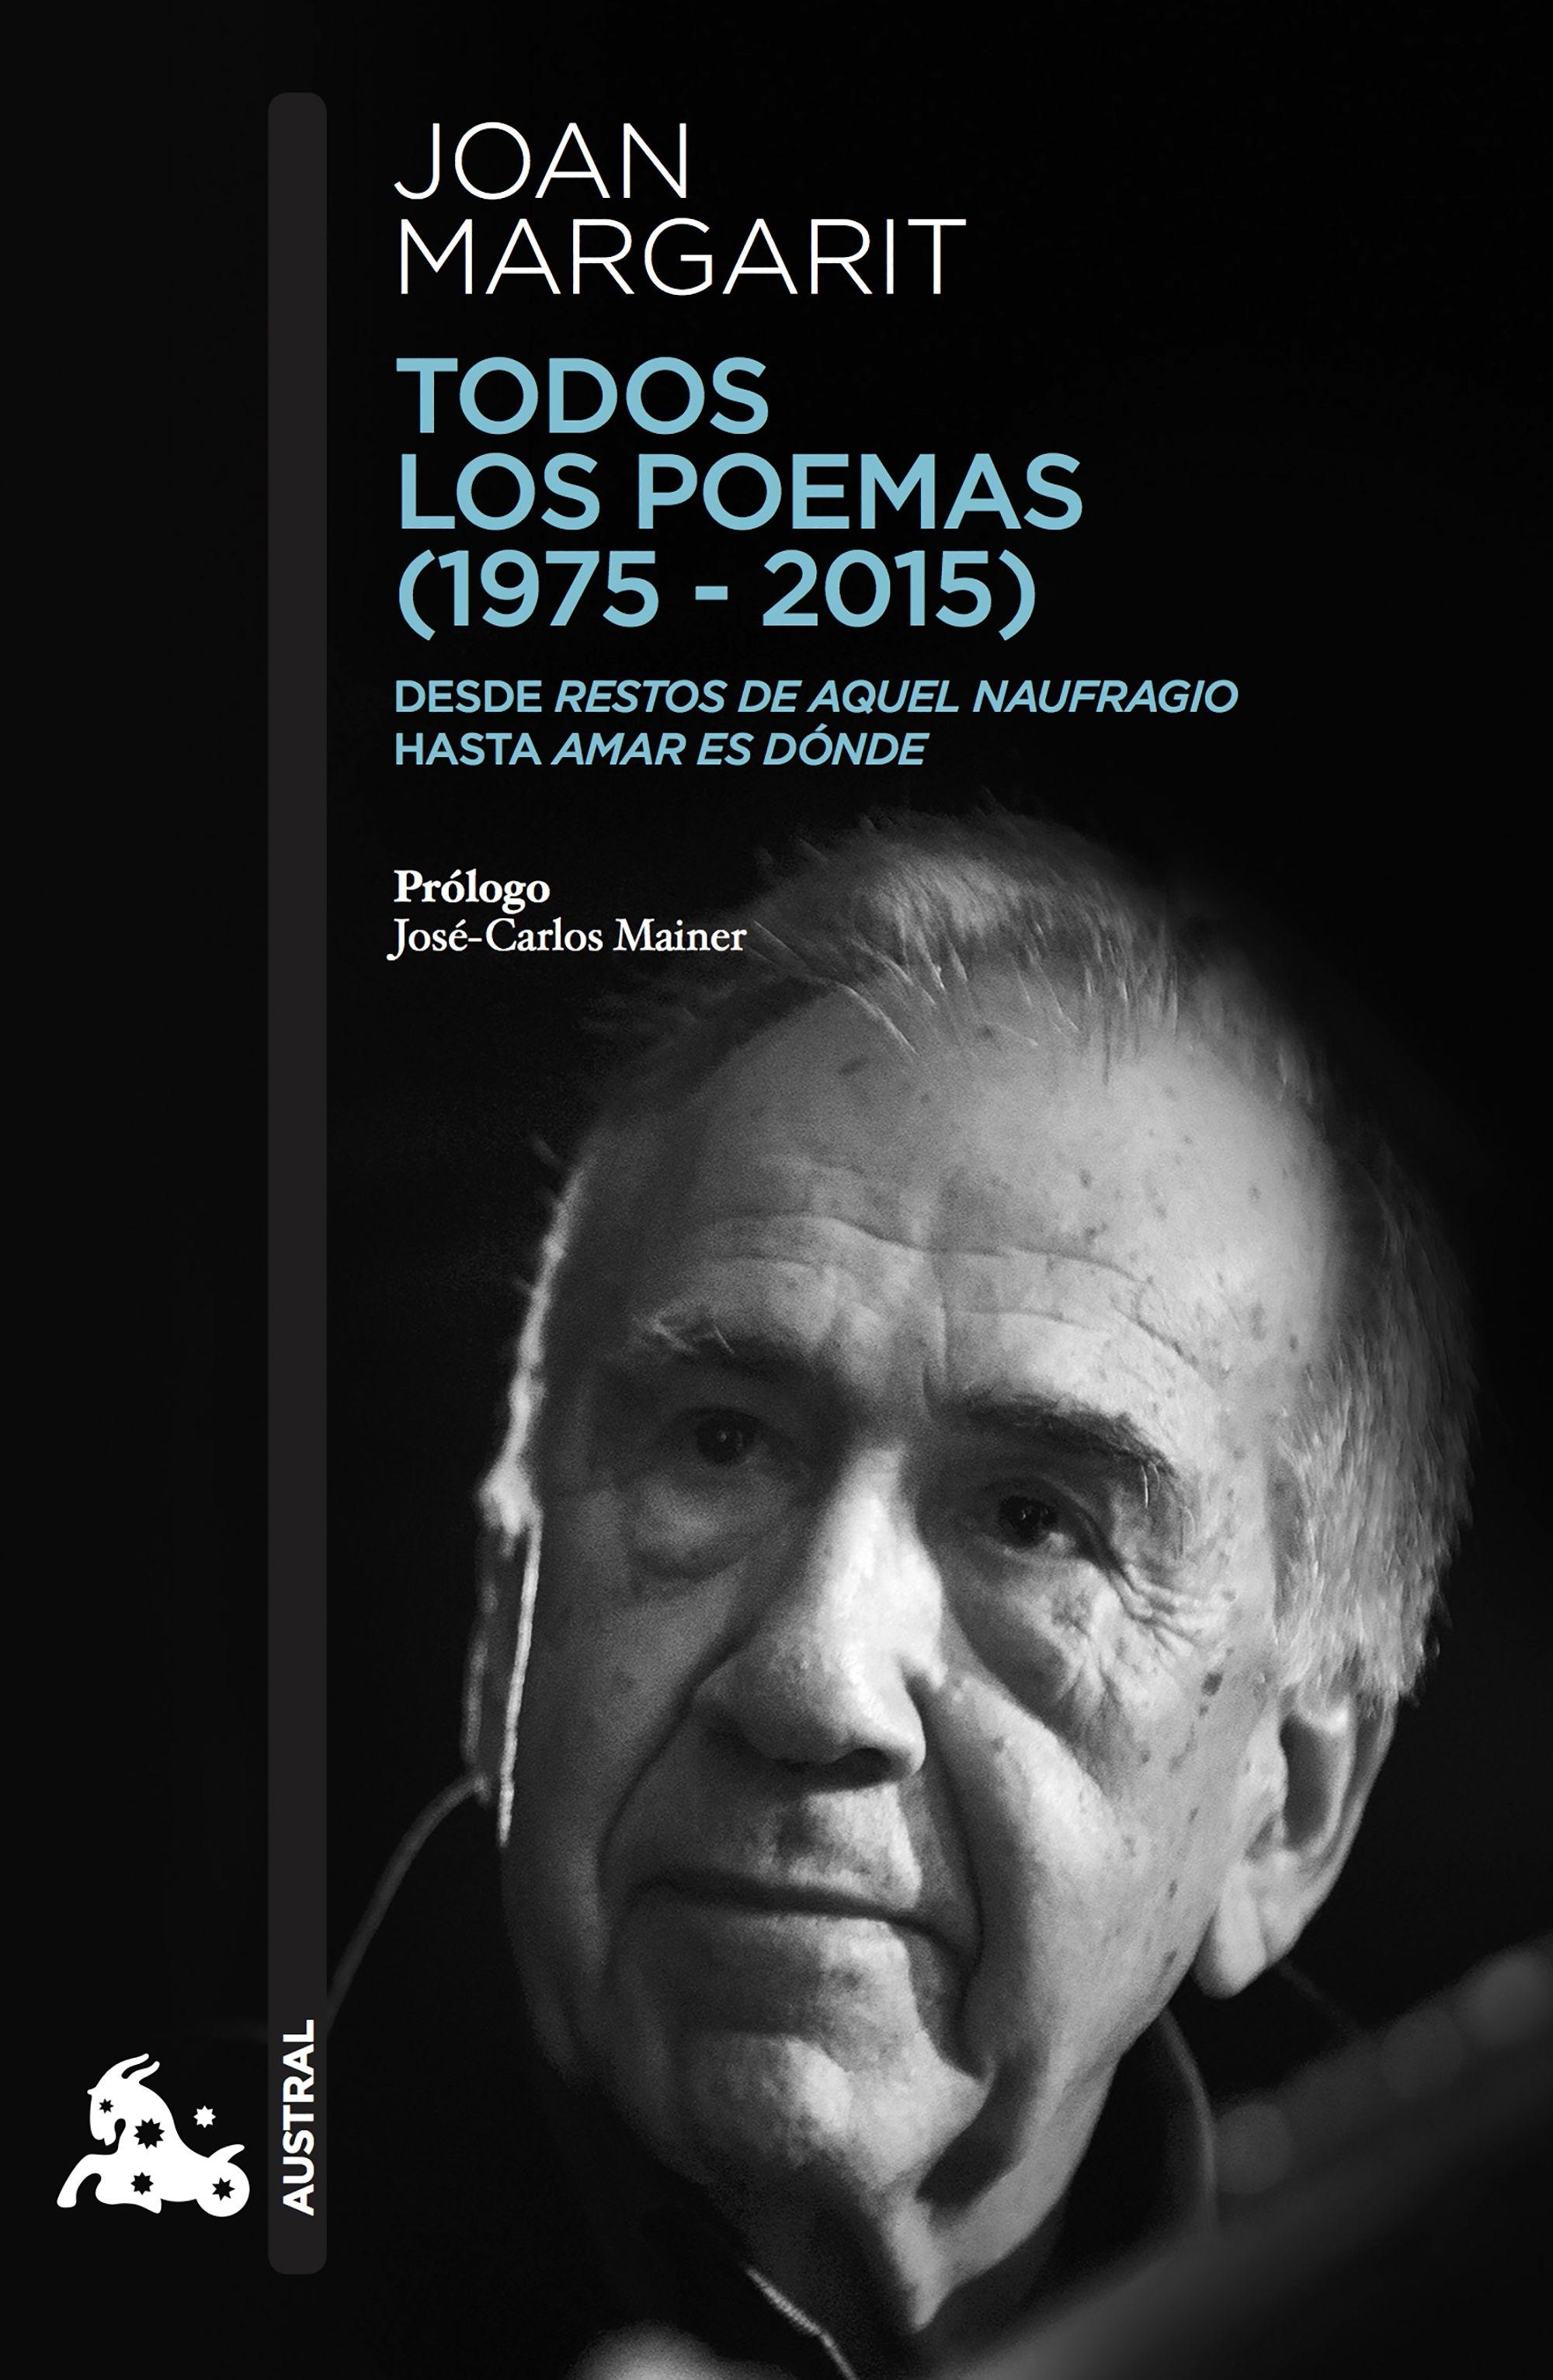 Todos los Poemas (1975-2015) "Desde 'Restos de Aquel Naufragio' hasta 'Amar Es Dónde'"